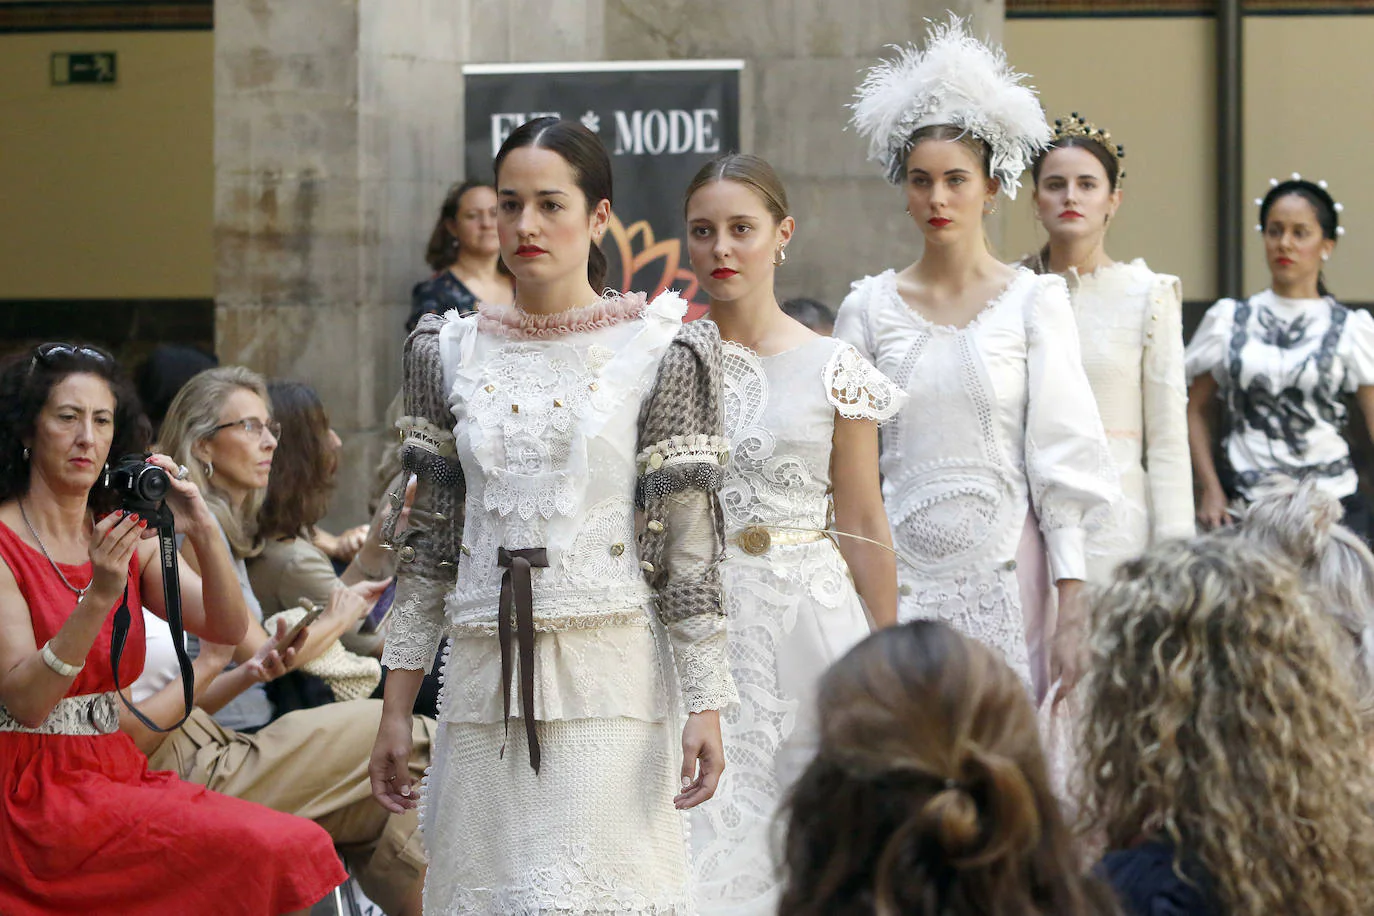 La primera Pasarela de Moda de Asturias, en la que numerosos diseñadores de la región han dado muestra de su creatividad y potencial, ha congregado a un gran número de expertos y aficionados en el Centro de Cultura Antiguo Instituto de Gijón. 